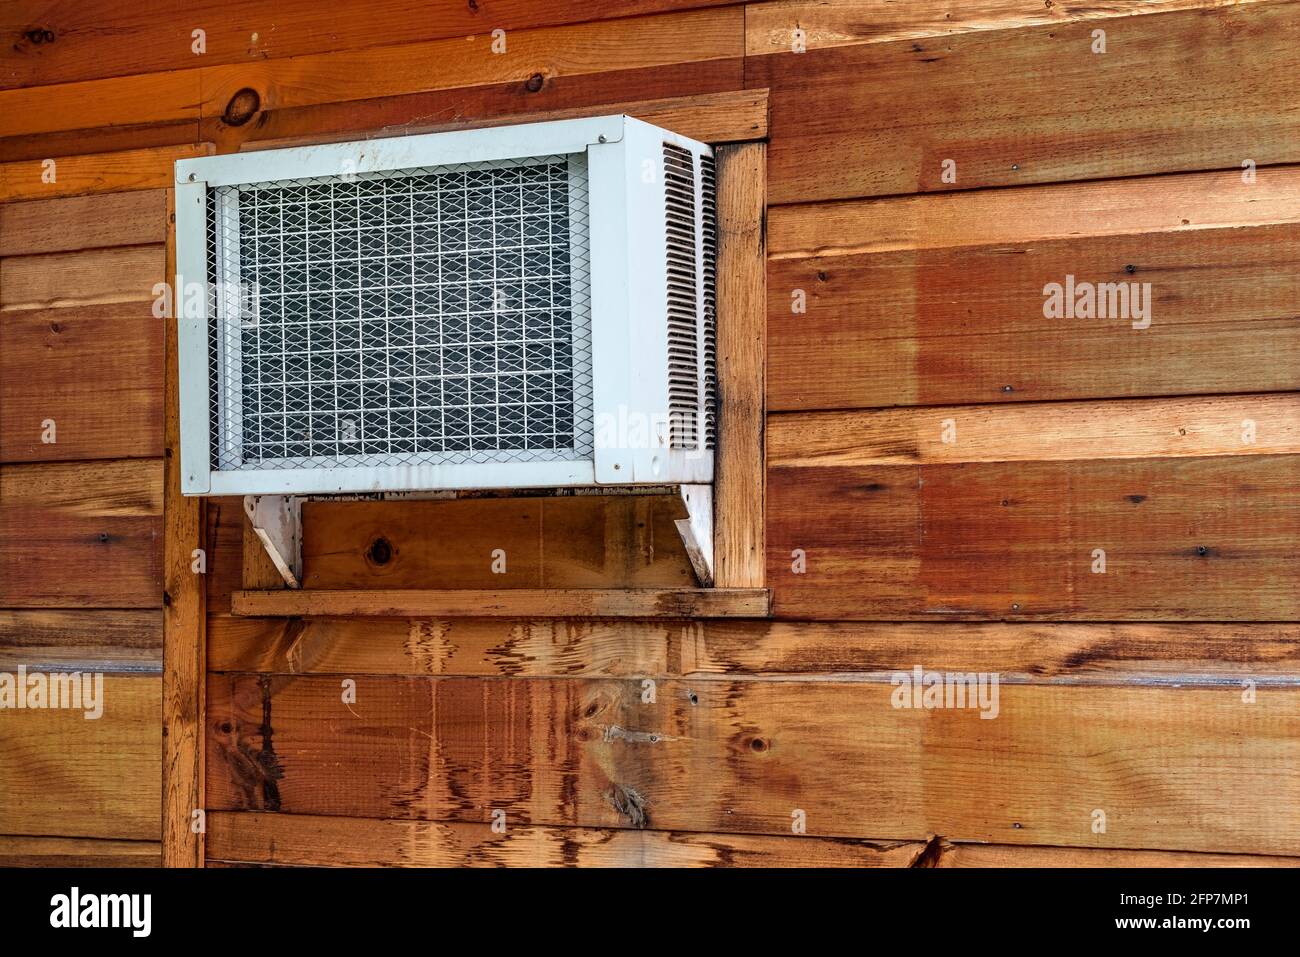 Immagine orizzontale di un condizionatore d'aria con finestra nella parete esterna di un edificio per la vendita al dettaglio. Foto Stock